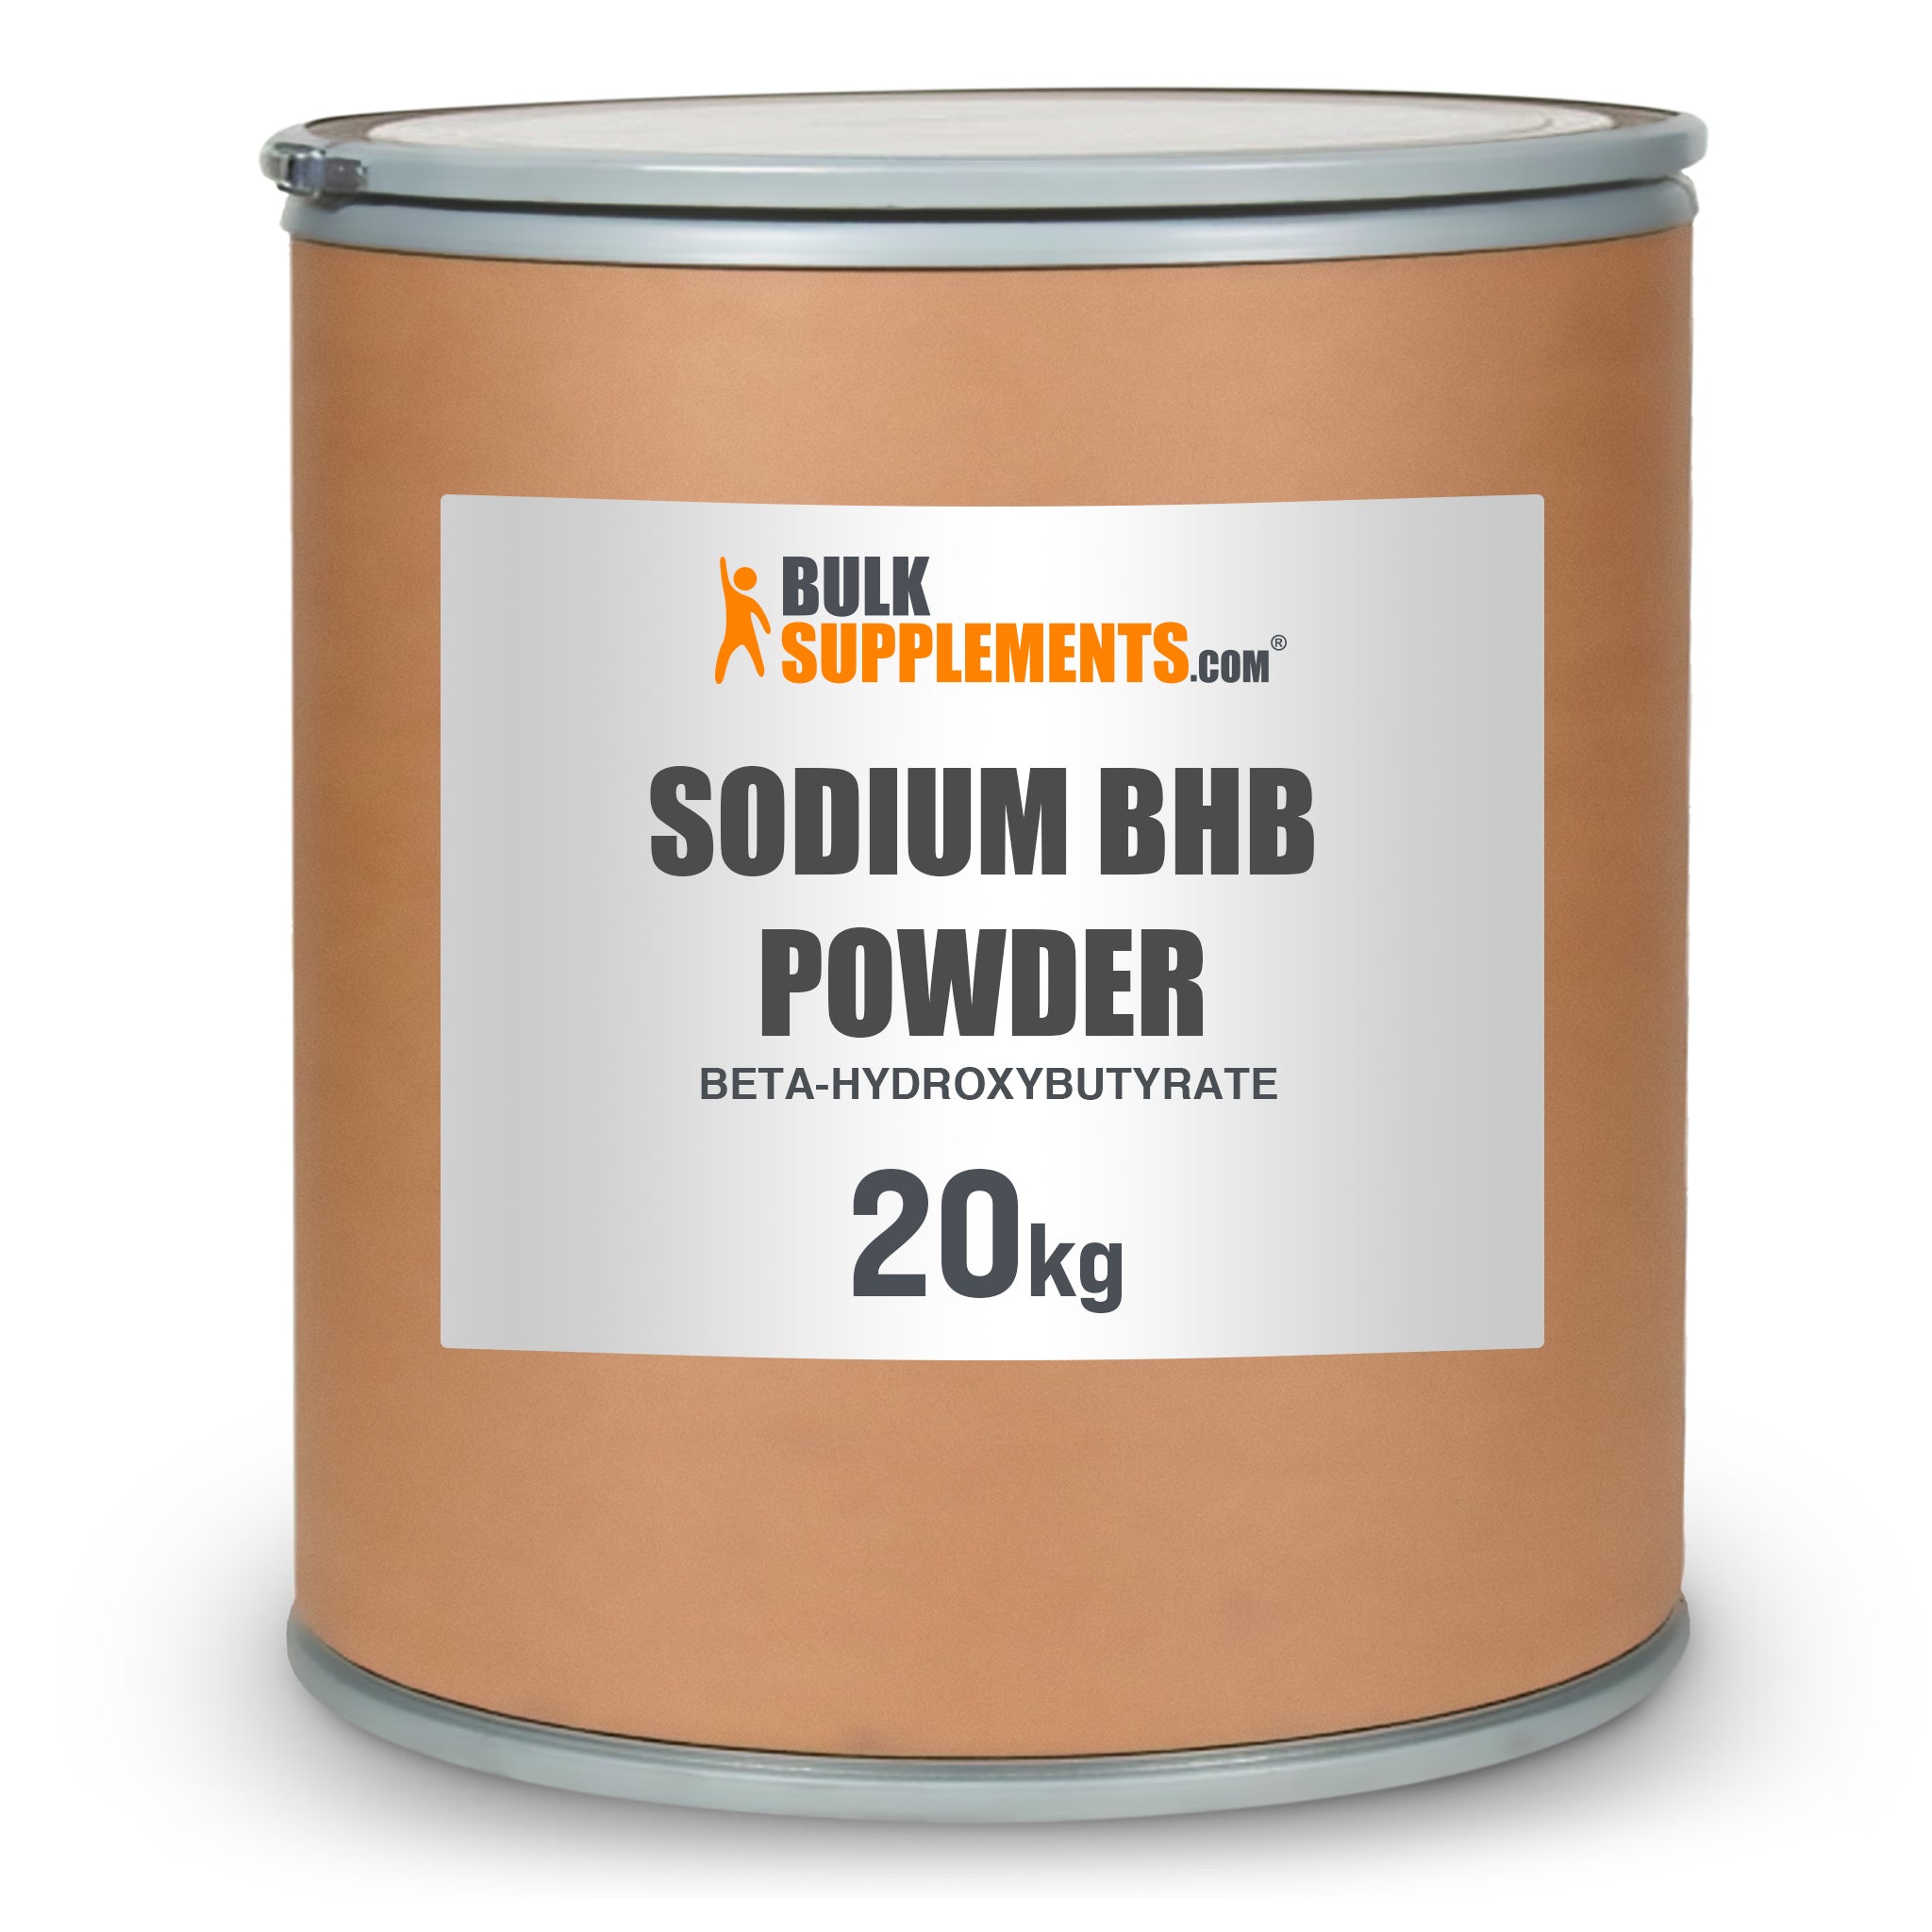 BulkSupplements Sodium BHB Powder (Beta-hydroxybutyrate) 20 Kilograms drum